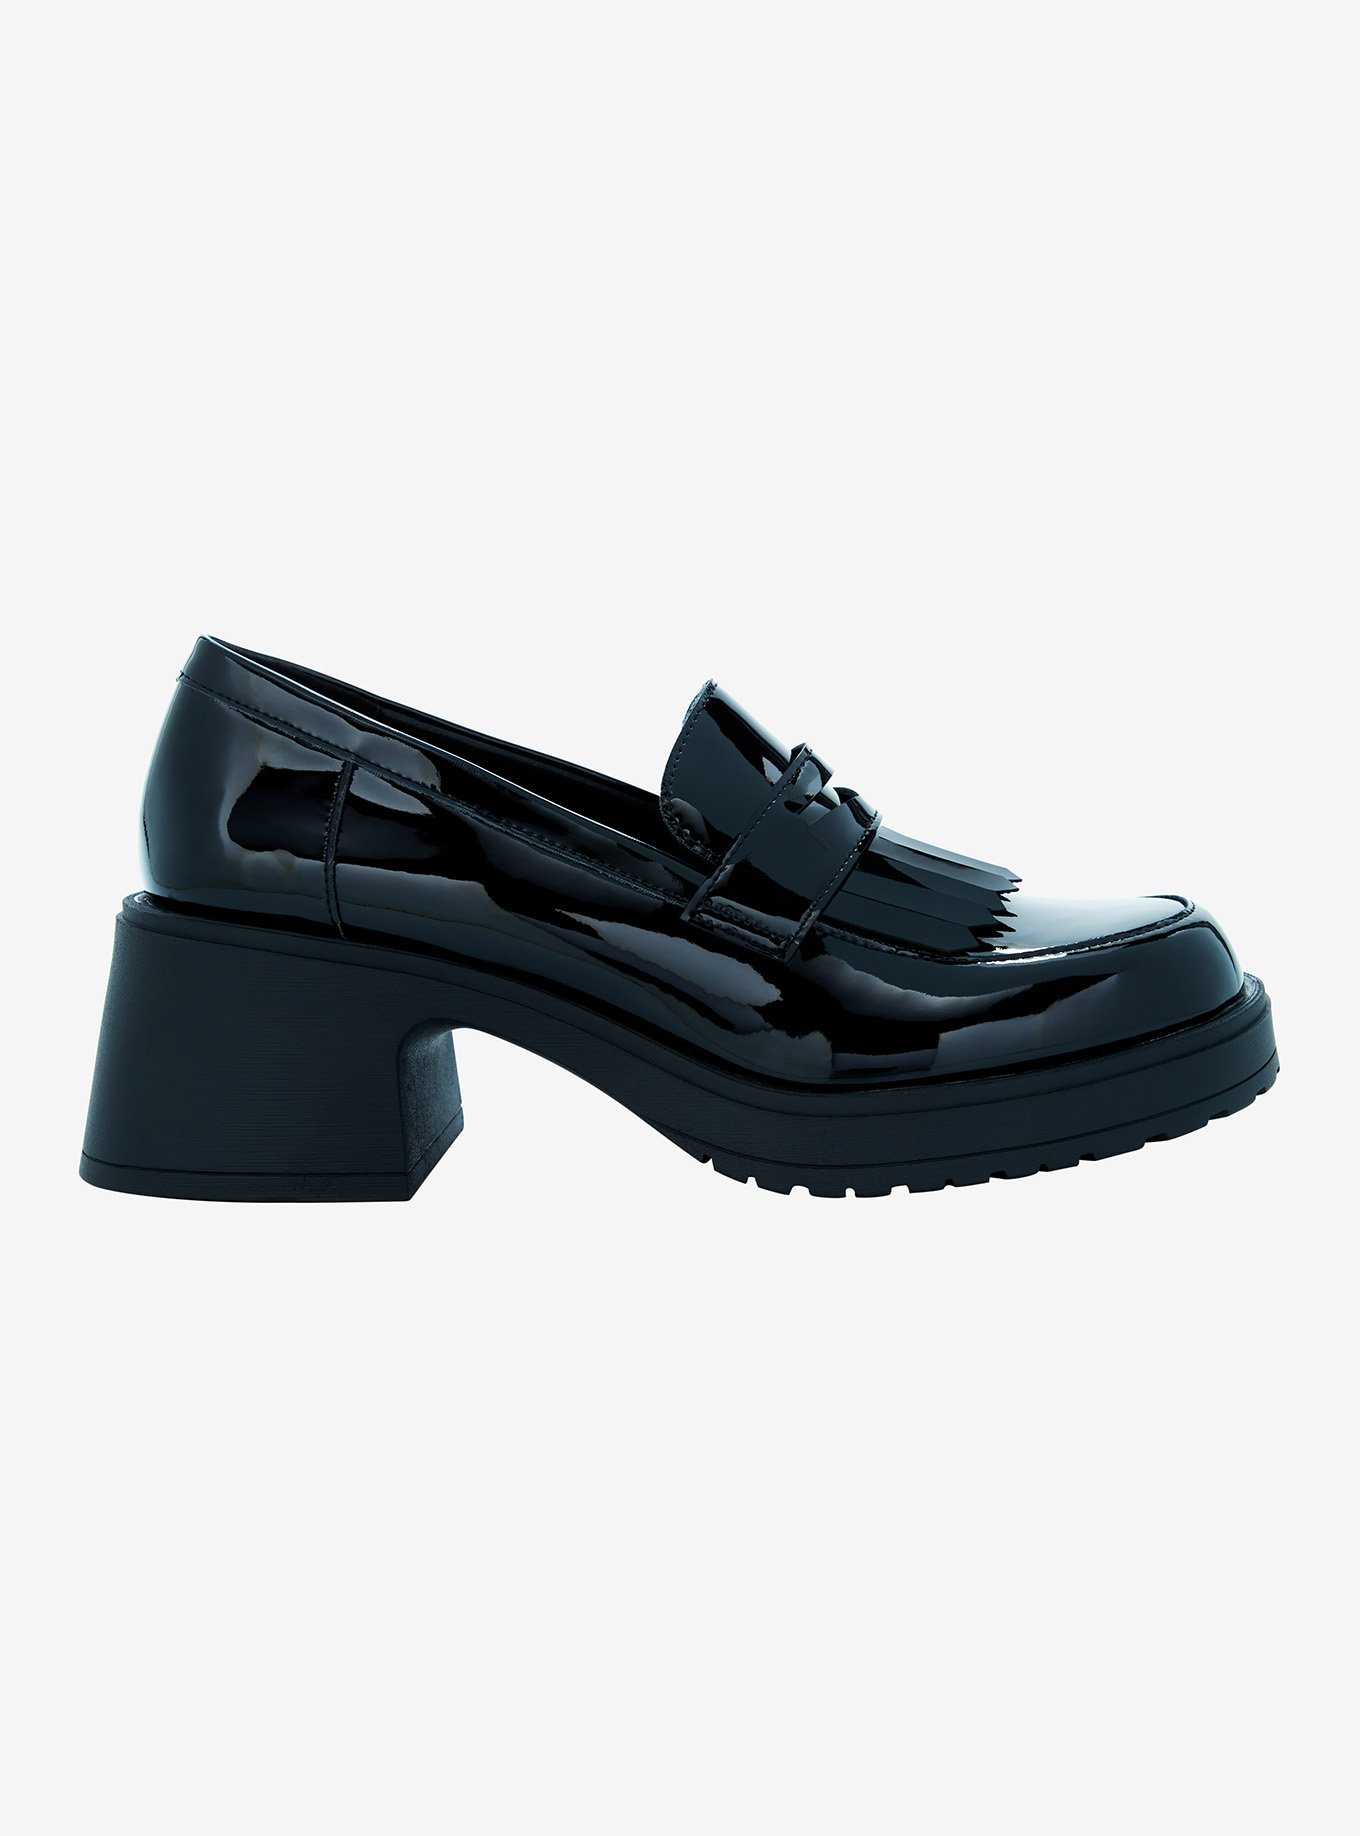 Dirty Laundry Black Patent Fringe Loafer Heels, , hi-res